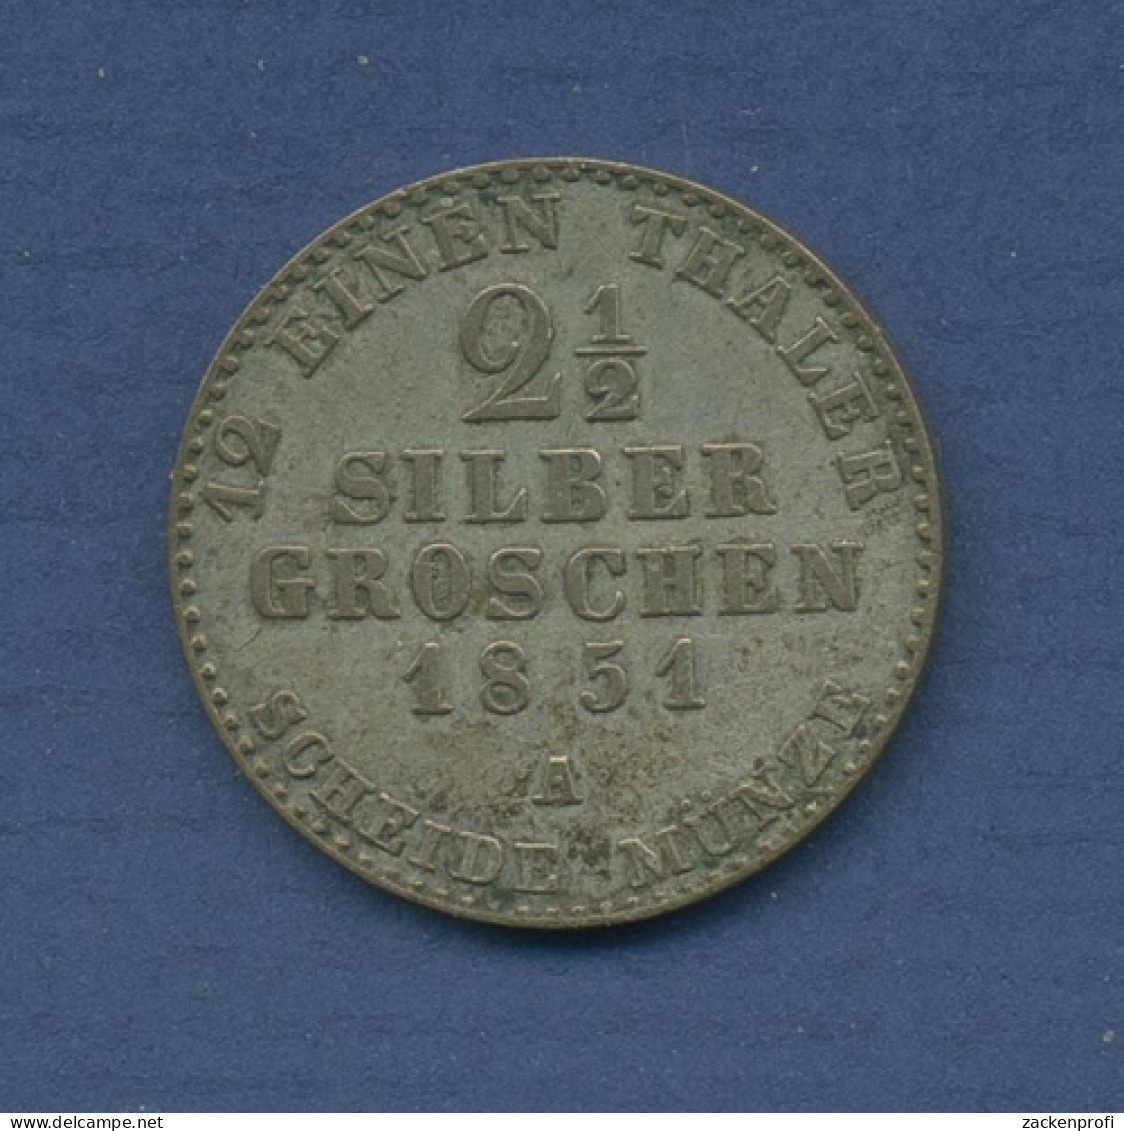 Preußen 2 1/2 Silbergroschen 1851 A, Friedrich Wilhelm IV., J 67 Fast Vz (m2771) - Groschen & Andere Kleinmünzen